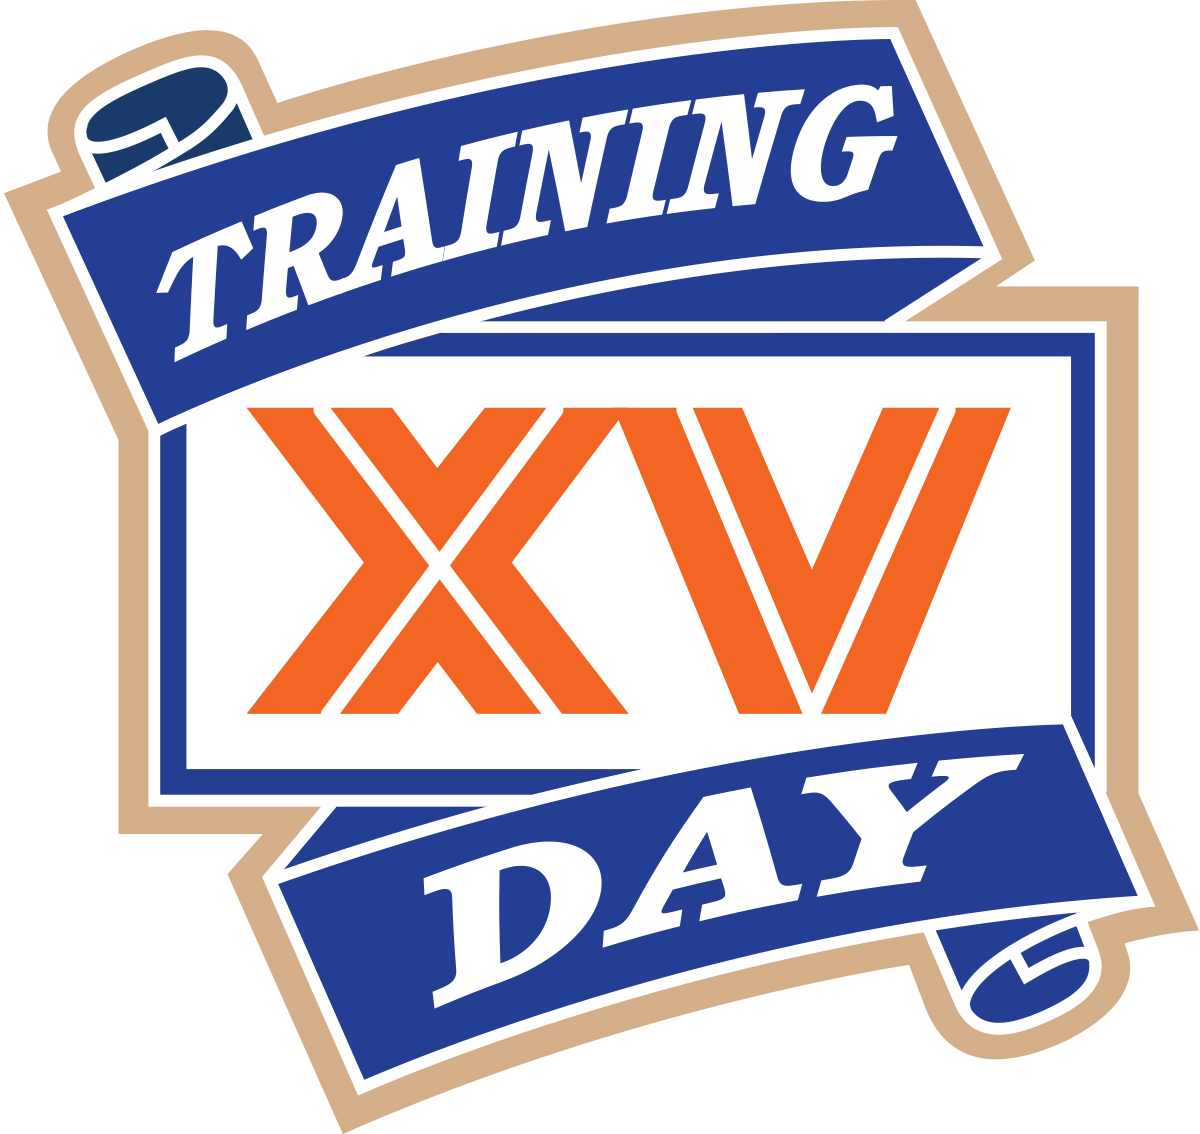 Training Day XV